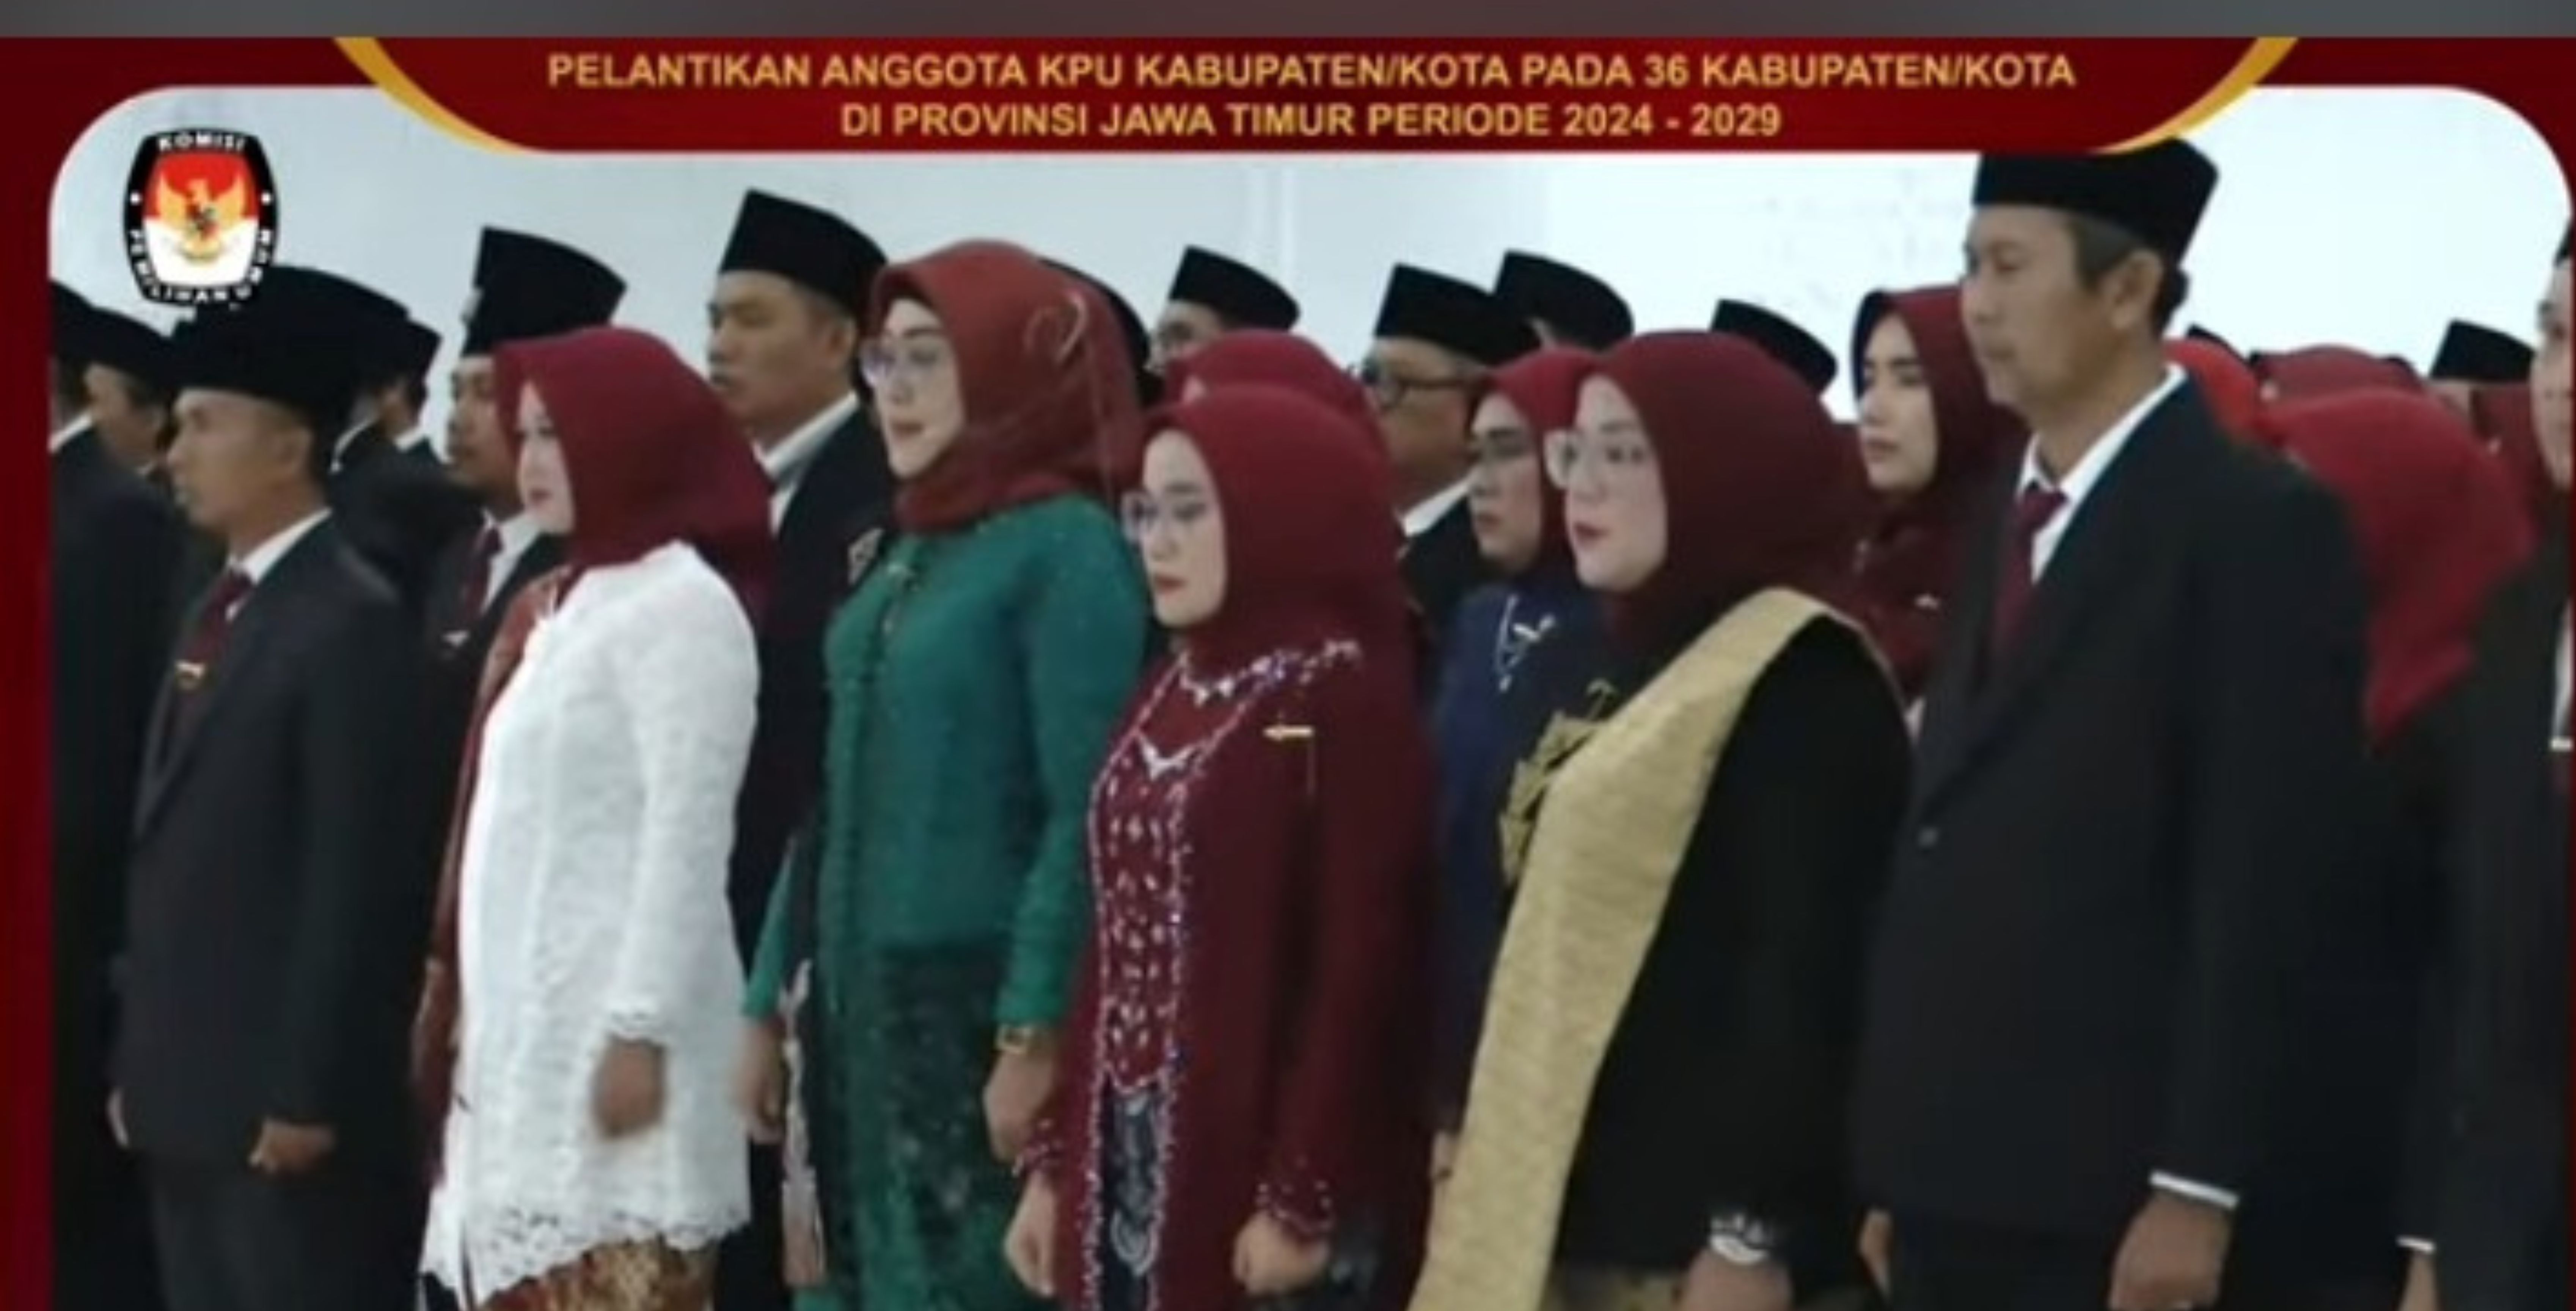 180 anggota KPU kabupaten kota terpilih periode 2024-2029 di Jawa Timur dilantik 